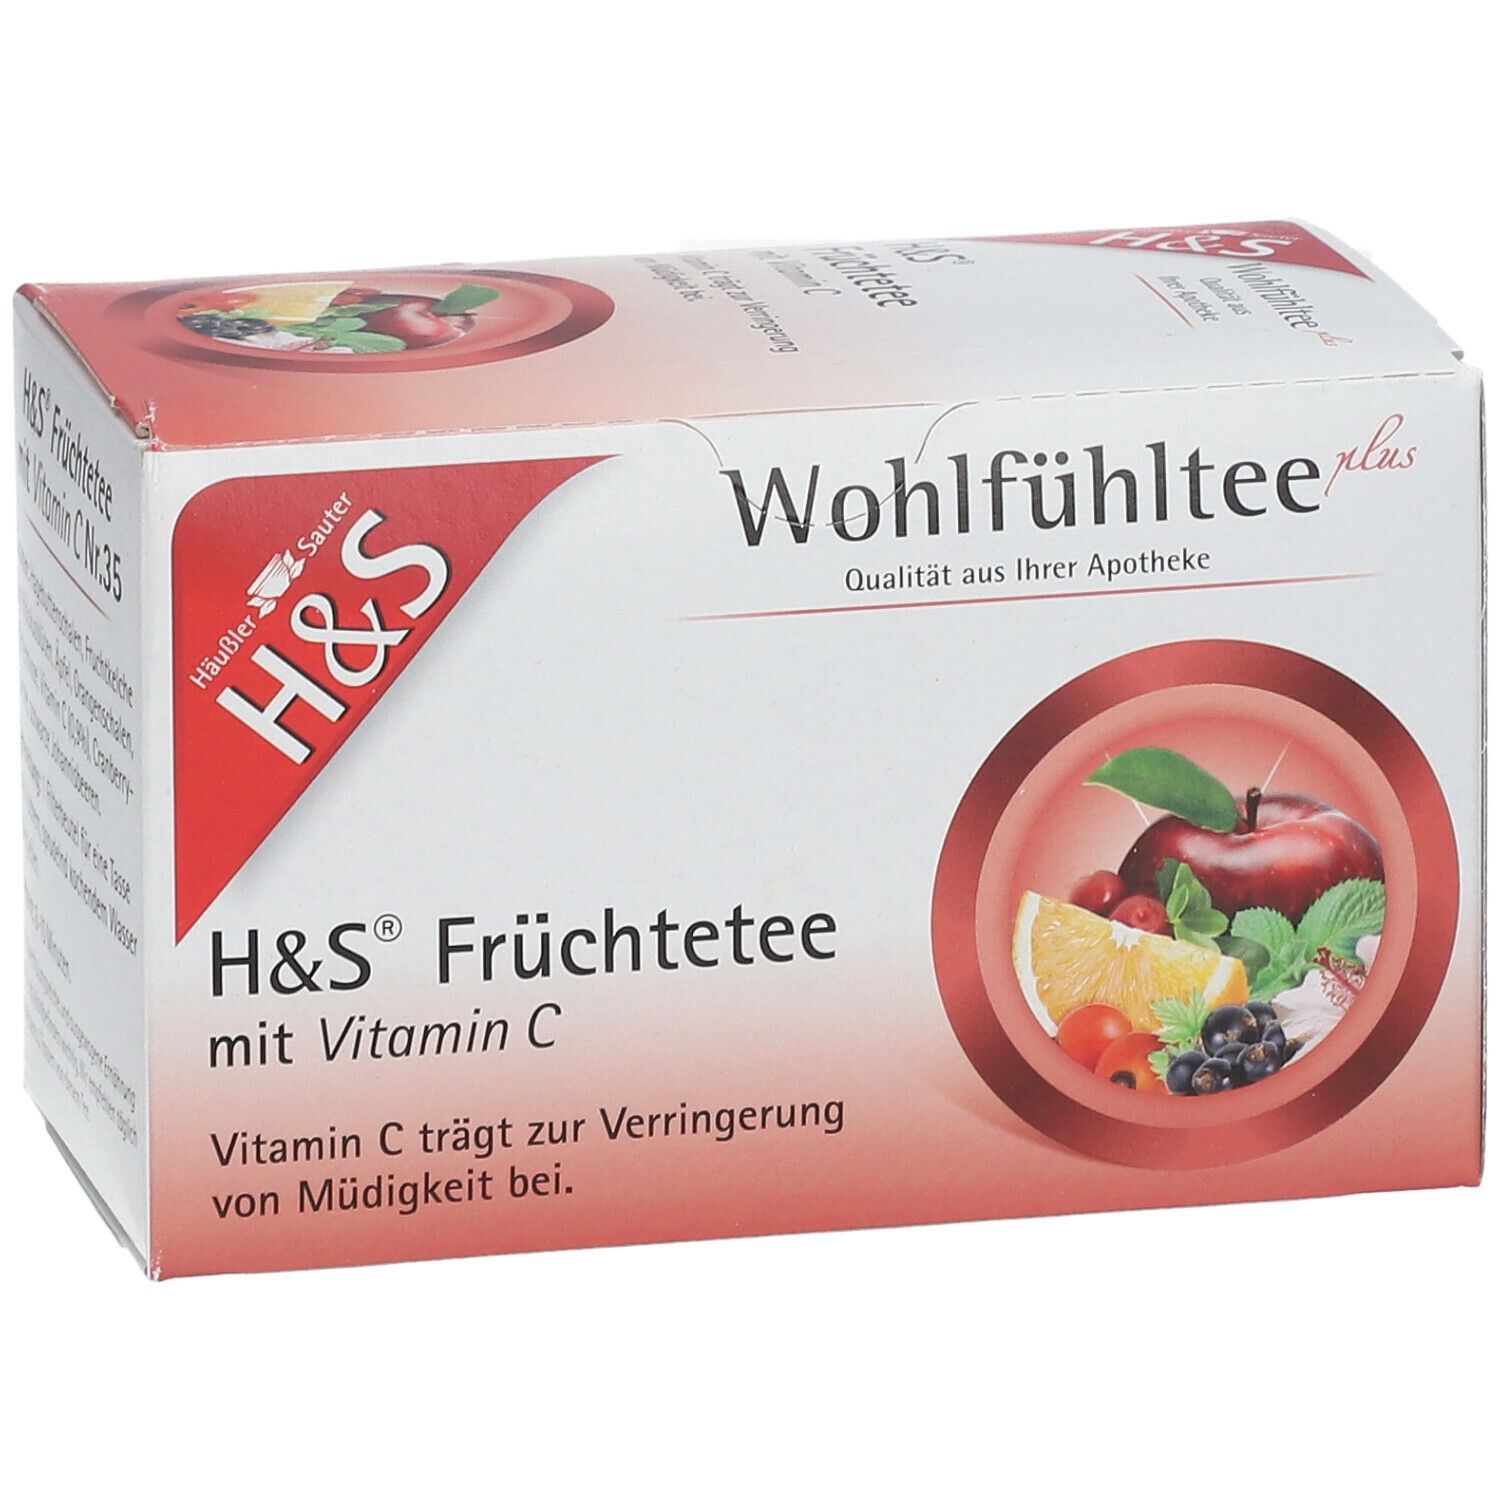 H&S Früchtetee mit Vitamin C Nr. 35